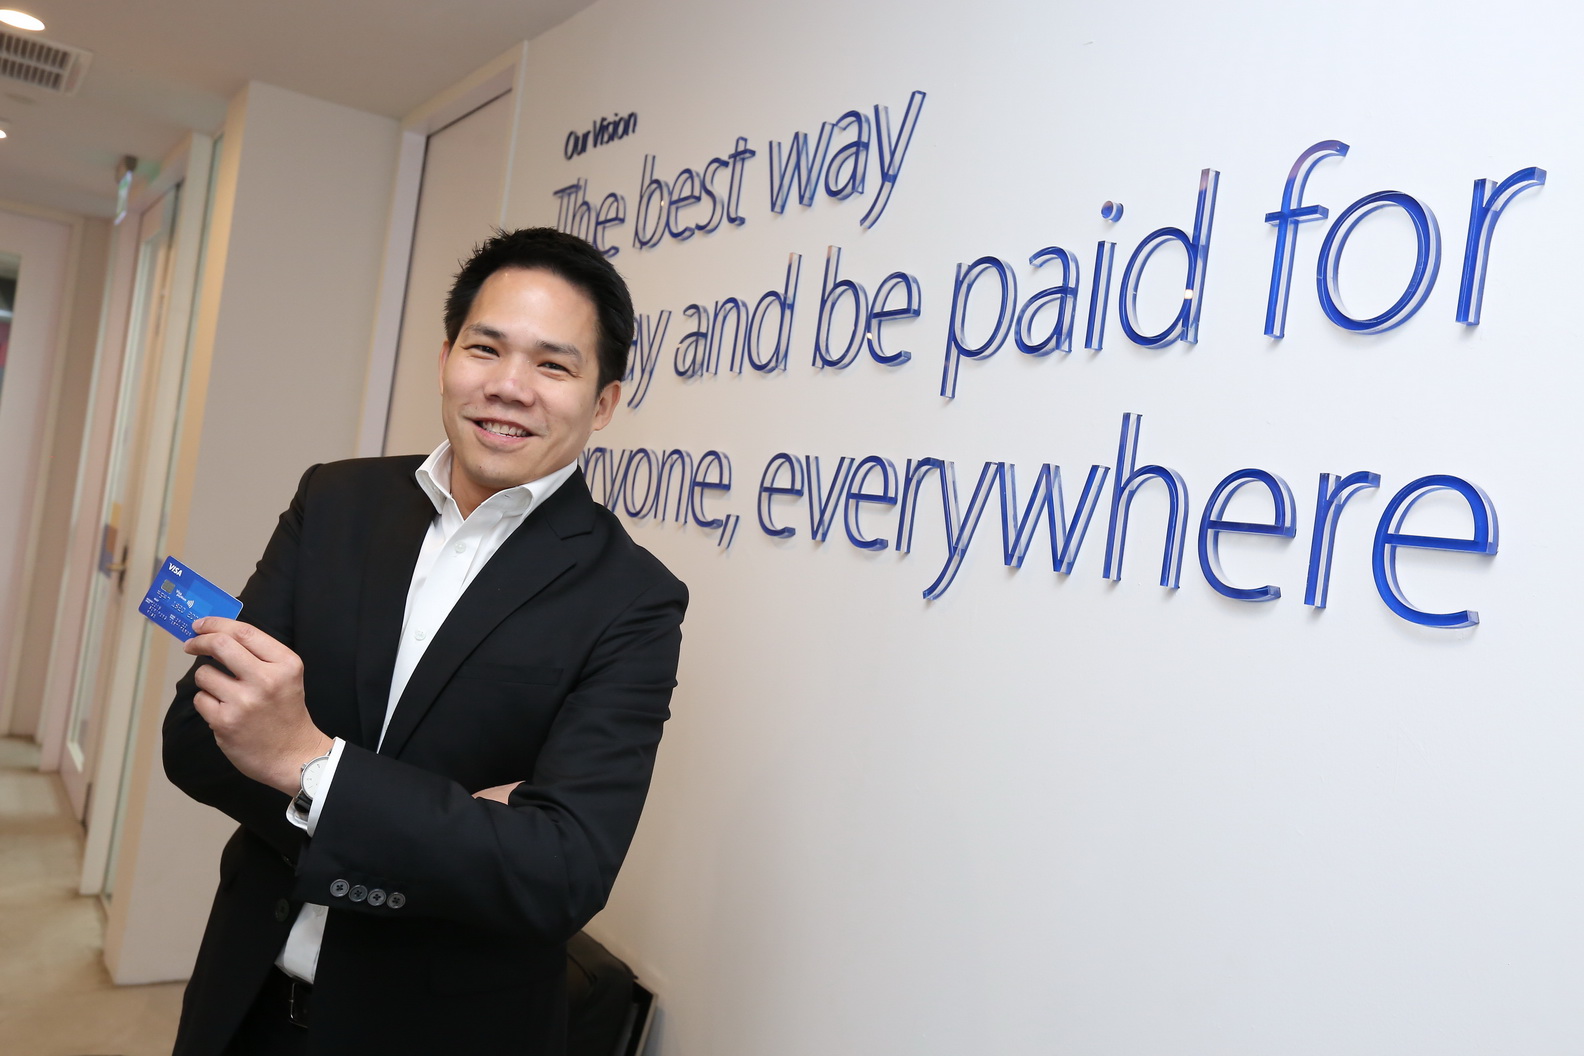 วีซ่าเผยนวัตกรรมระบบการชำระเงินอิเล็กทรอนิกส์ในประเทศไทยพร้อมมุ่งสู่อนาคต